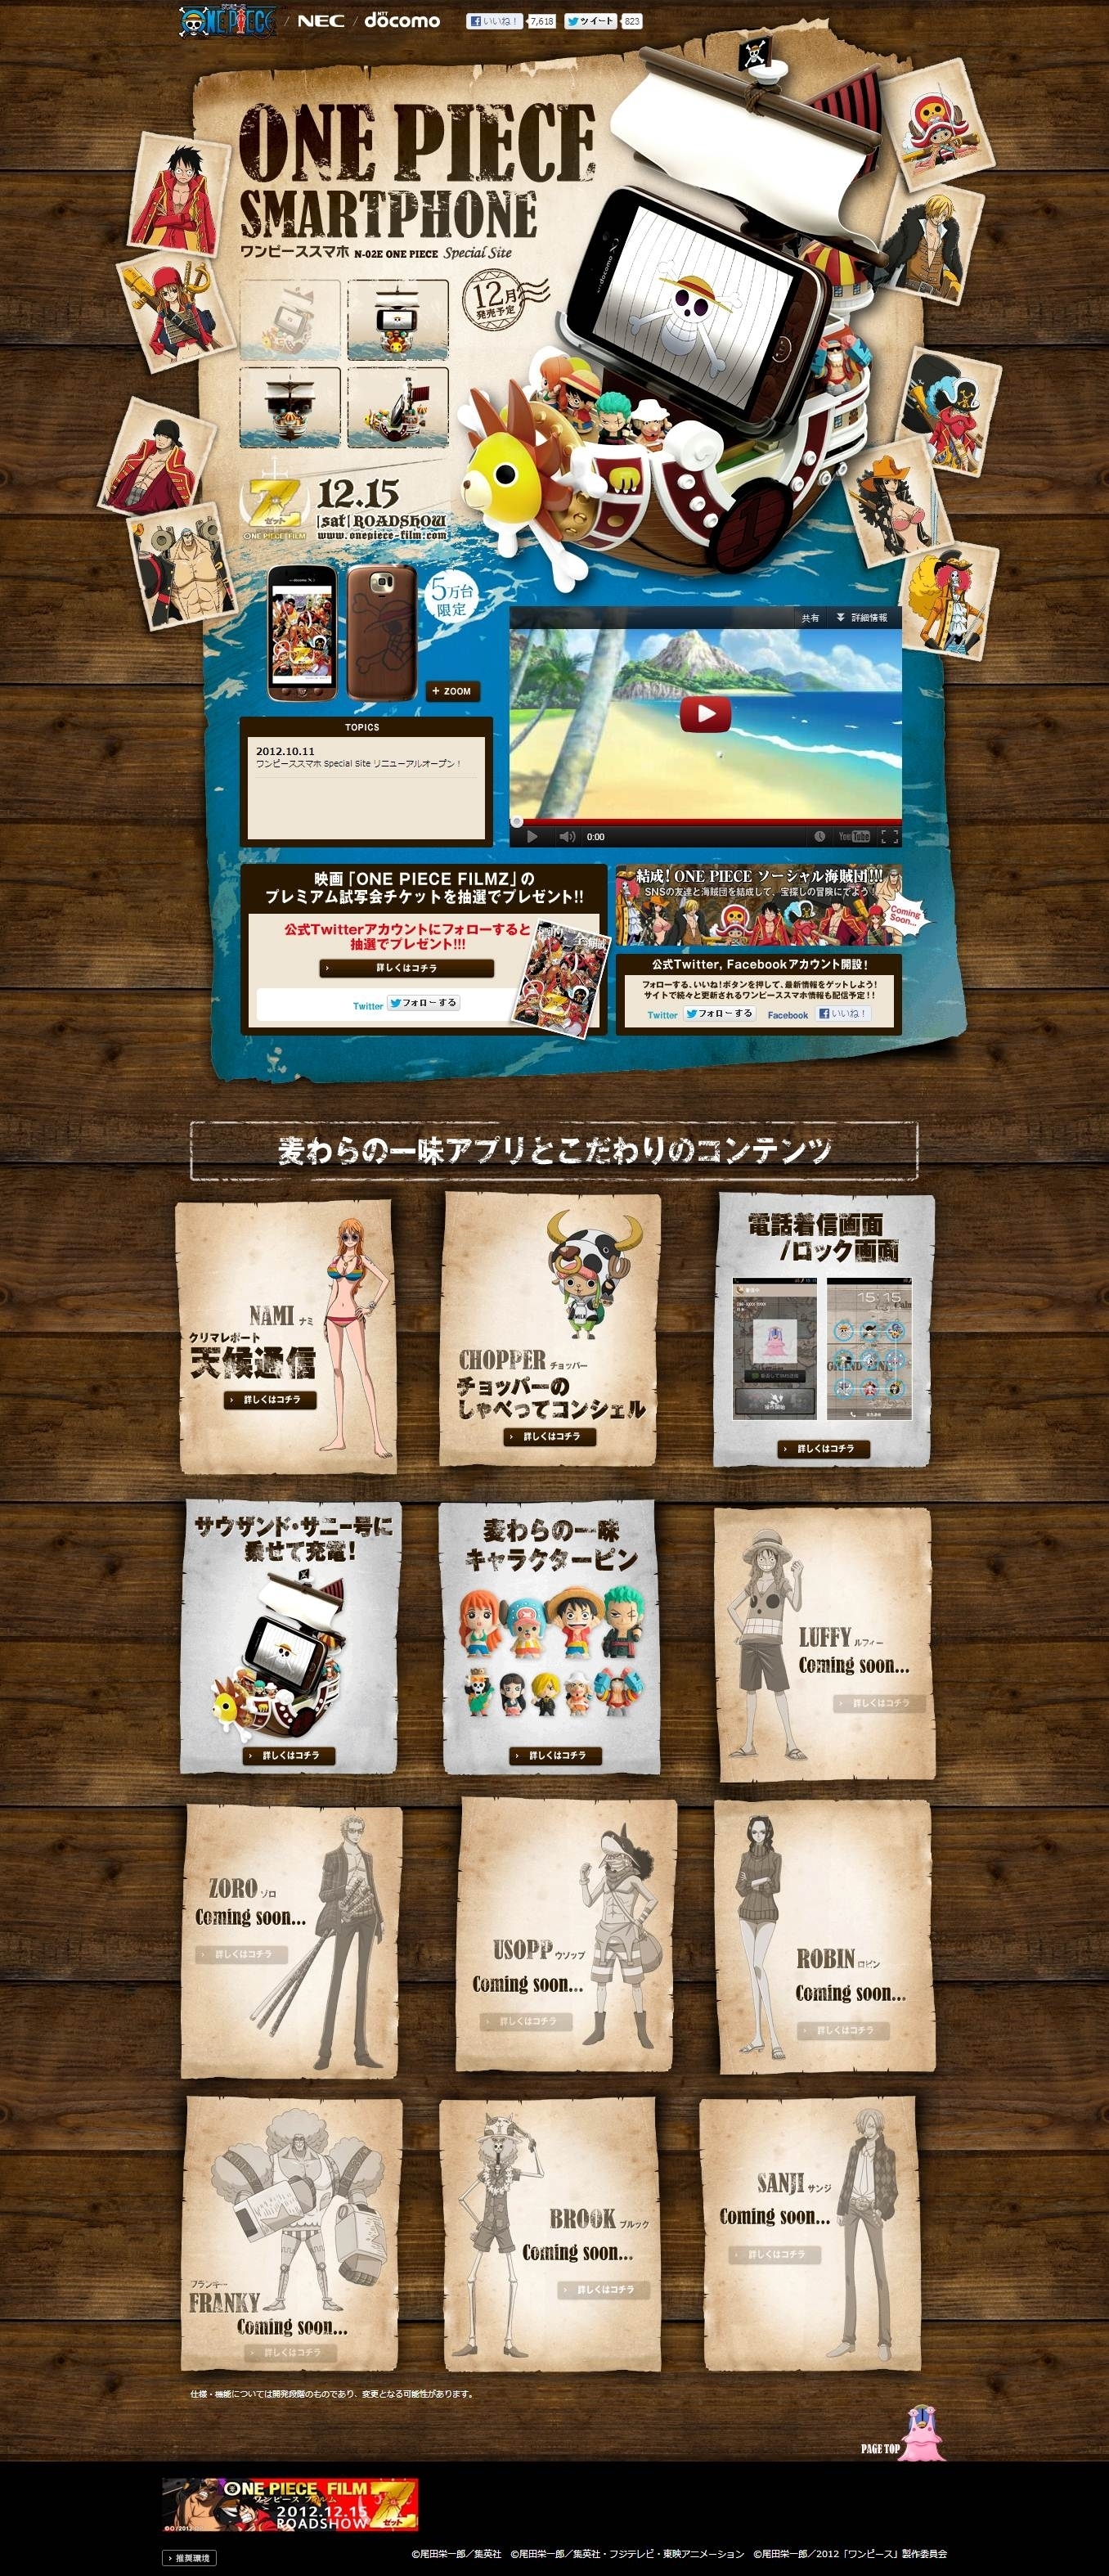 話題の端末 One Pieceスマホ 5万台限定 の全容が次々と明らかに オリジナルアニメも見られる One Pieceスマホ スペシャルサイト ついに本格オープン One Pieceスマホ運営委員会のプレスリリース